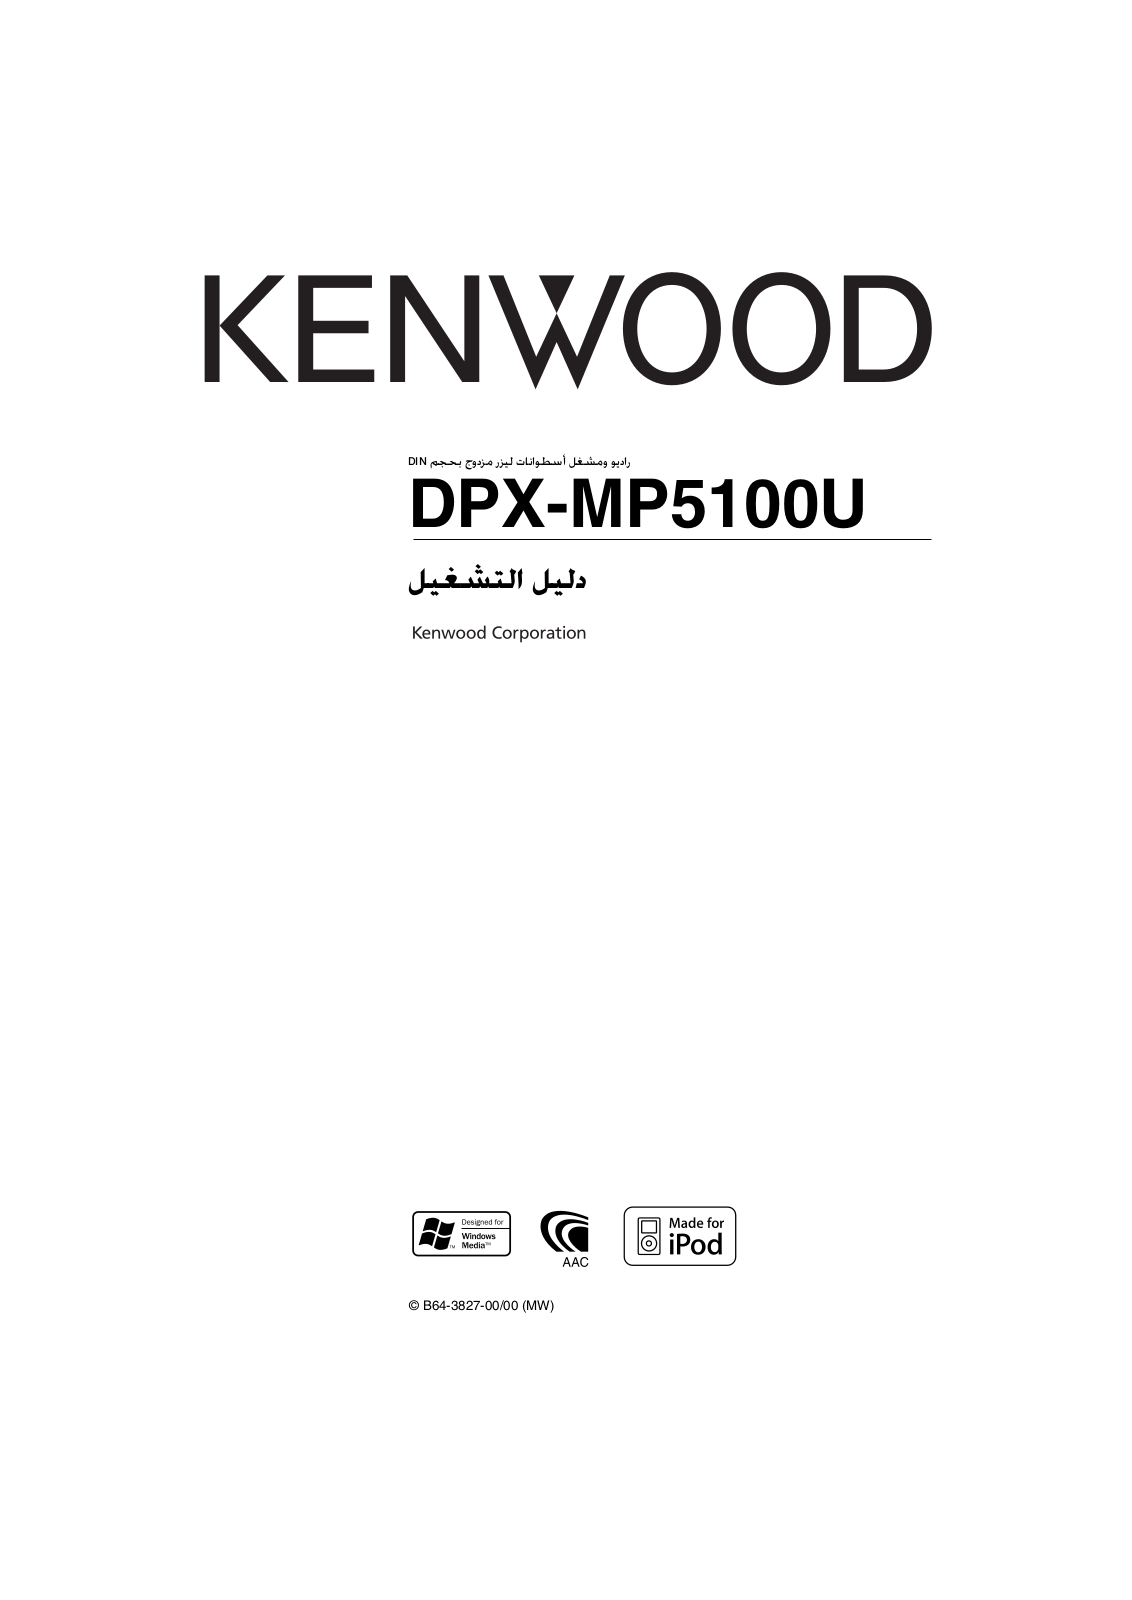 KENWOOD DPX-MP5100U User Manual